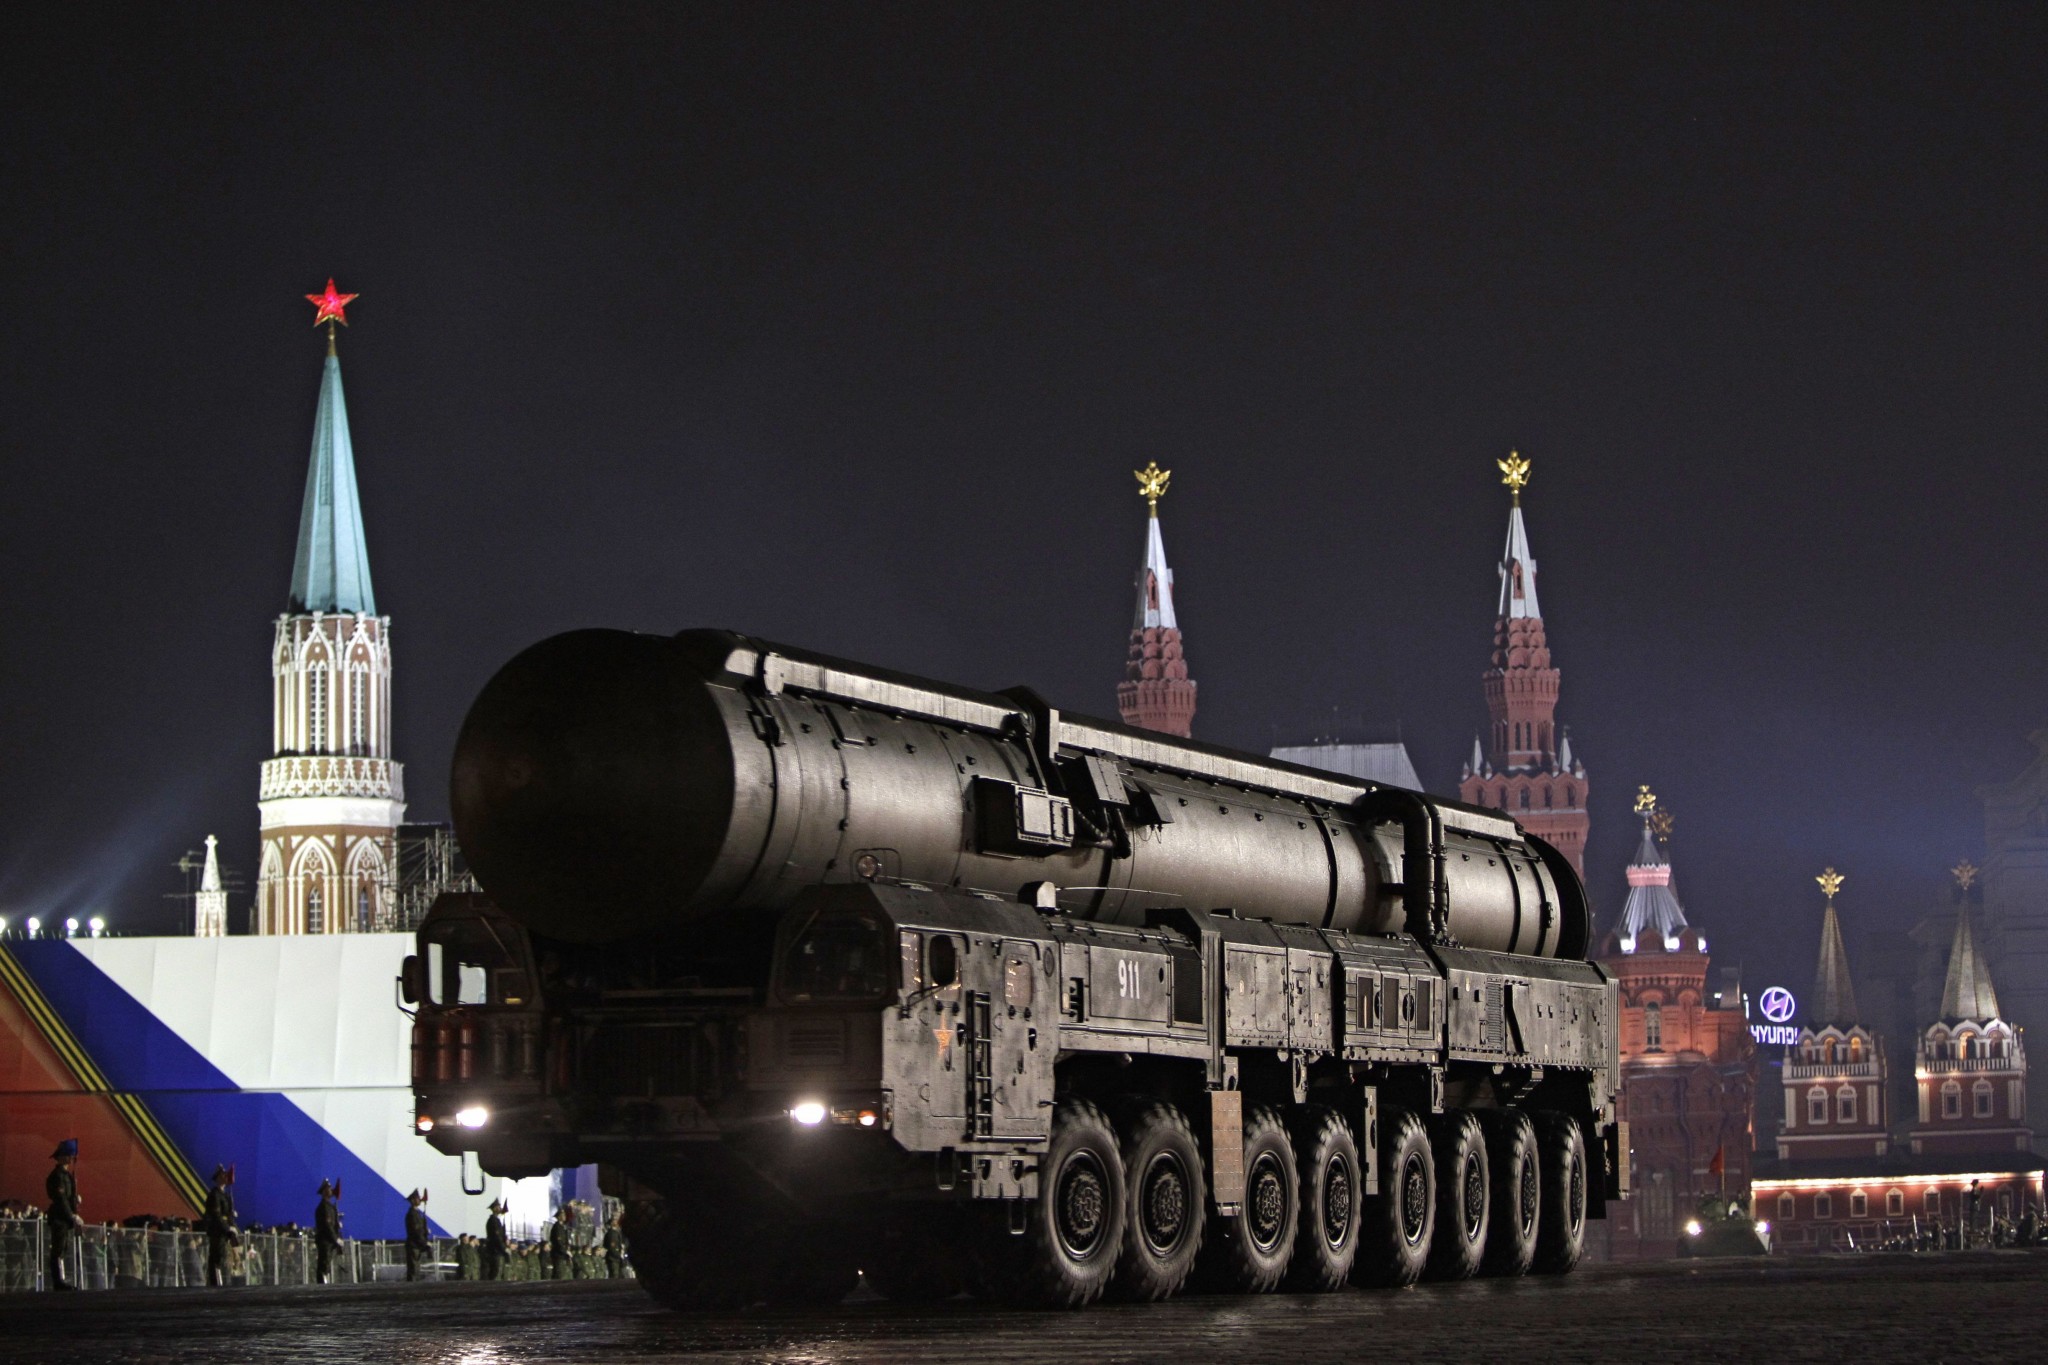 ΥΠΑΜ Ρωσίας: «Η συμμετοχή μη πυρηνικών μελών του ΝΑΤΟ σε ασκήσεις με πυρηνικά είναι κατάφωρη παραβίαση της συνθήκης»